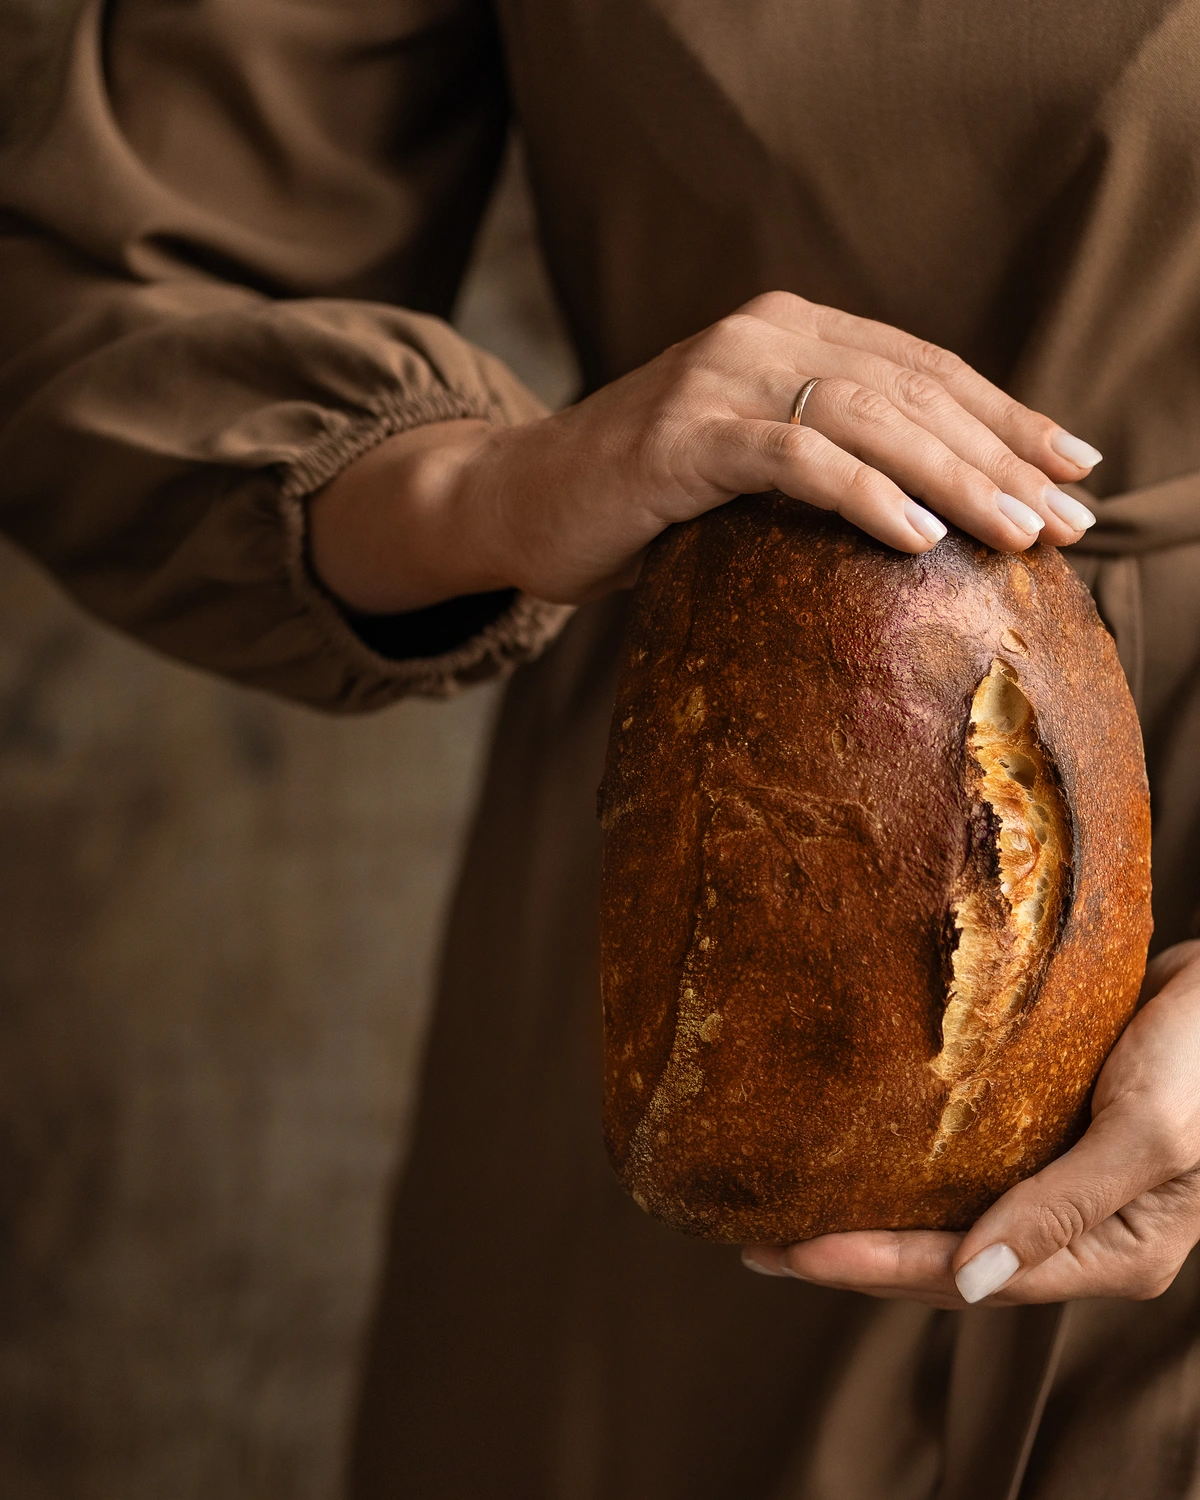 Домашен хляб. Жена в кафява рокля държи домашен хляб в ръцете си.